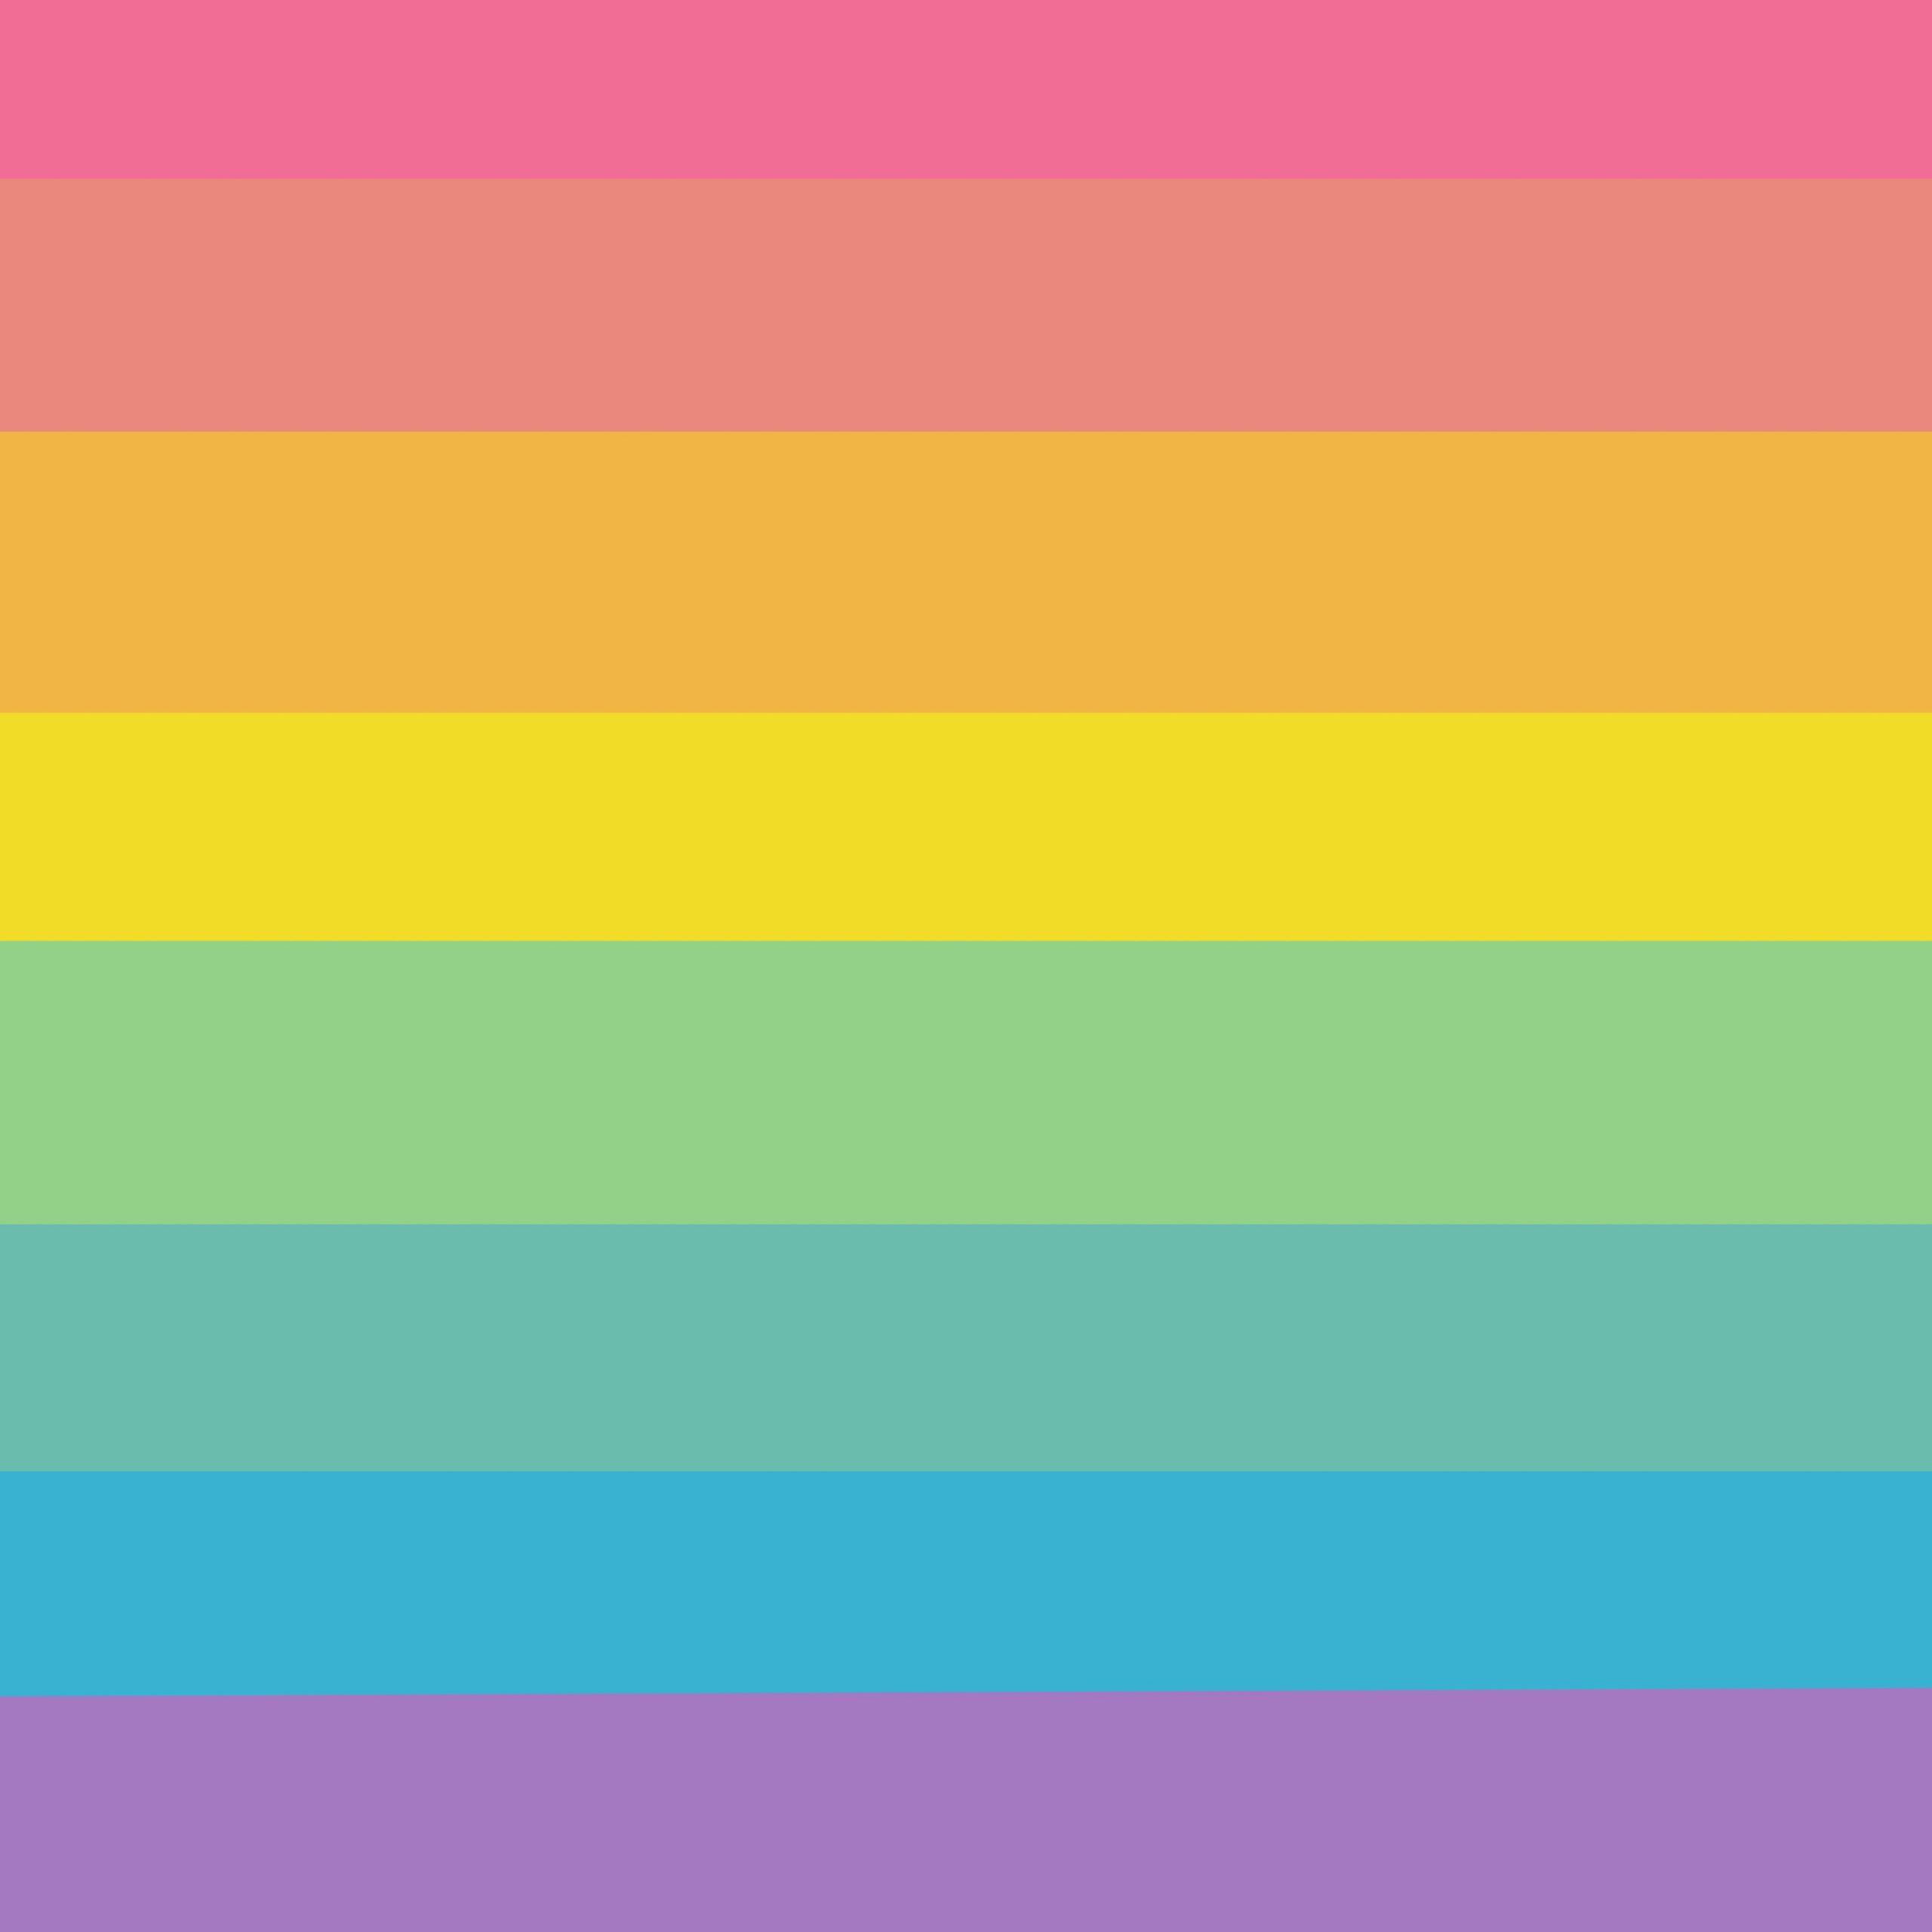 Fondo de rayas gruesas de colores del arcoiris para scrapbooking digital